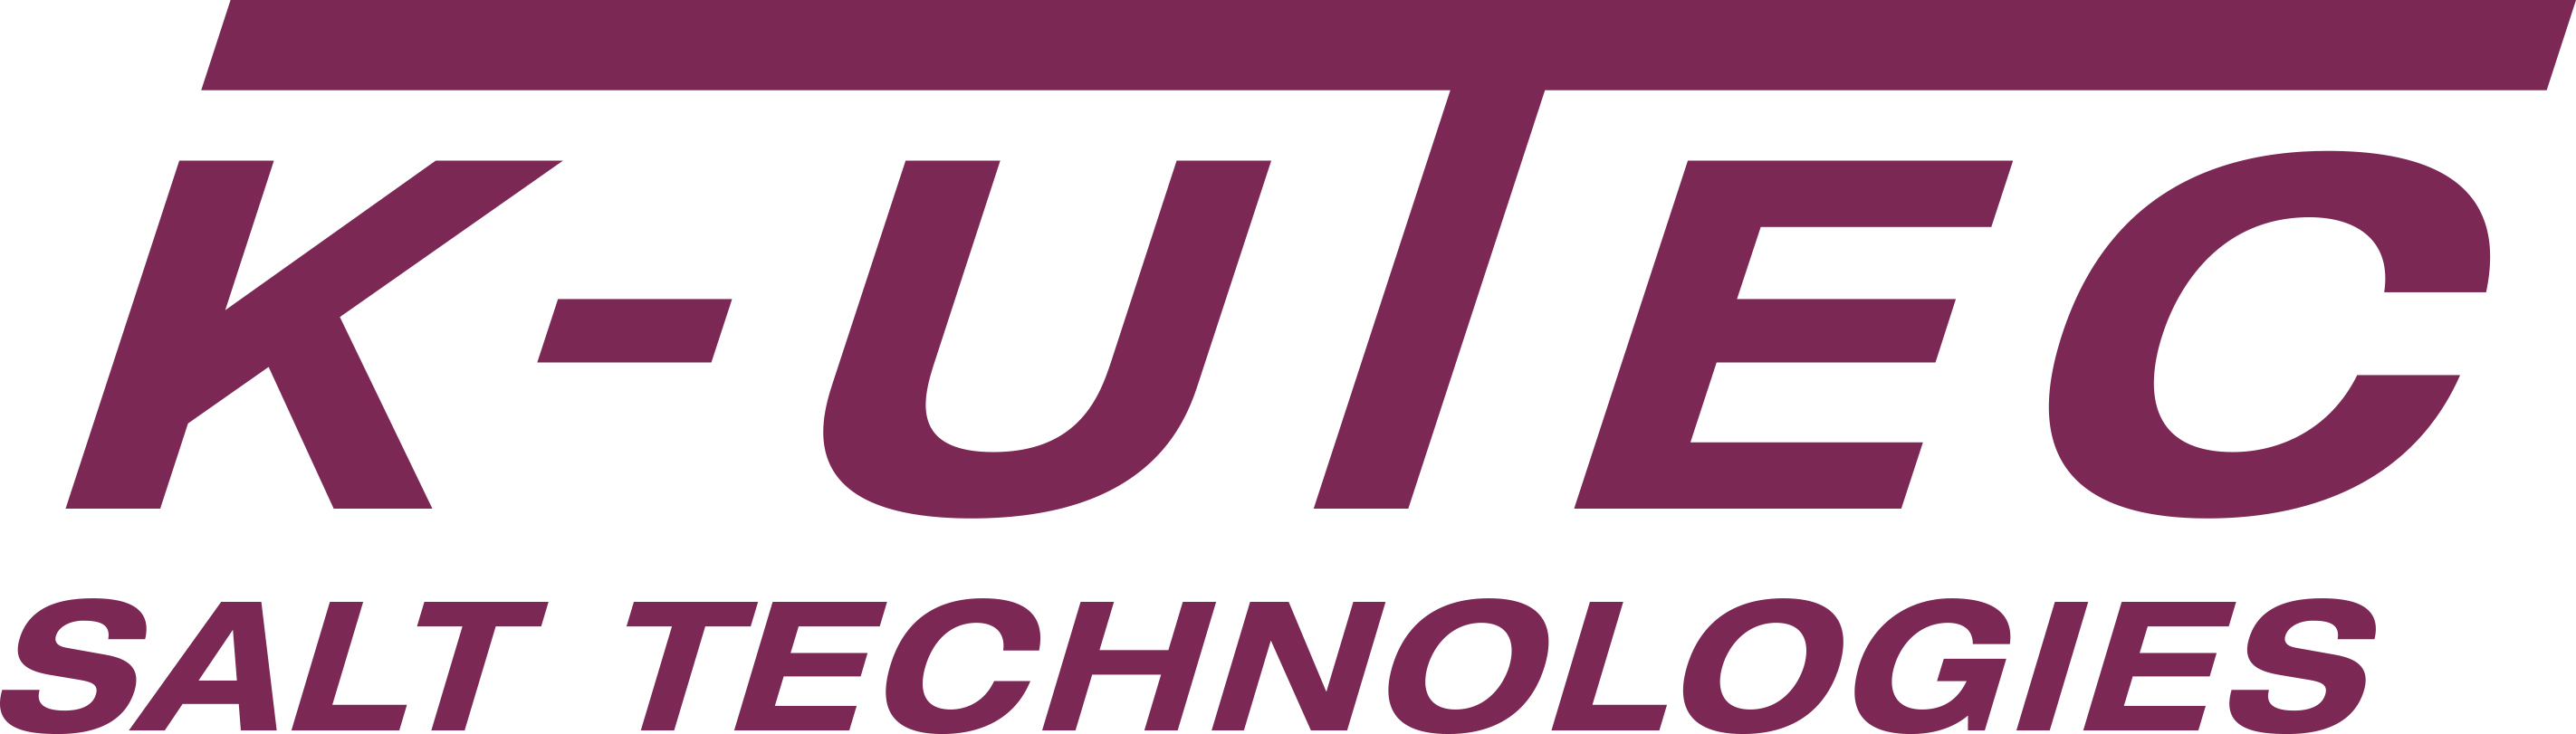 K-UTEC Logo